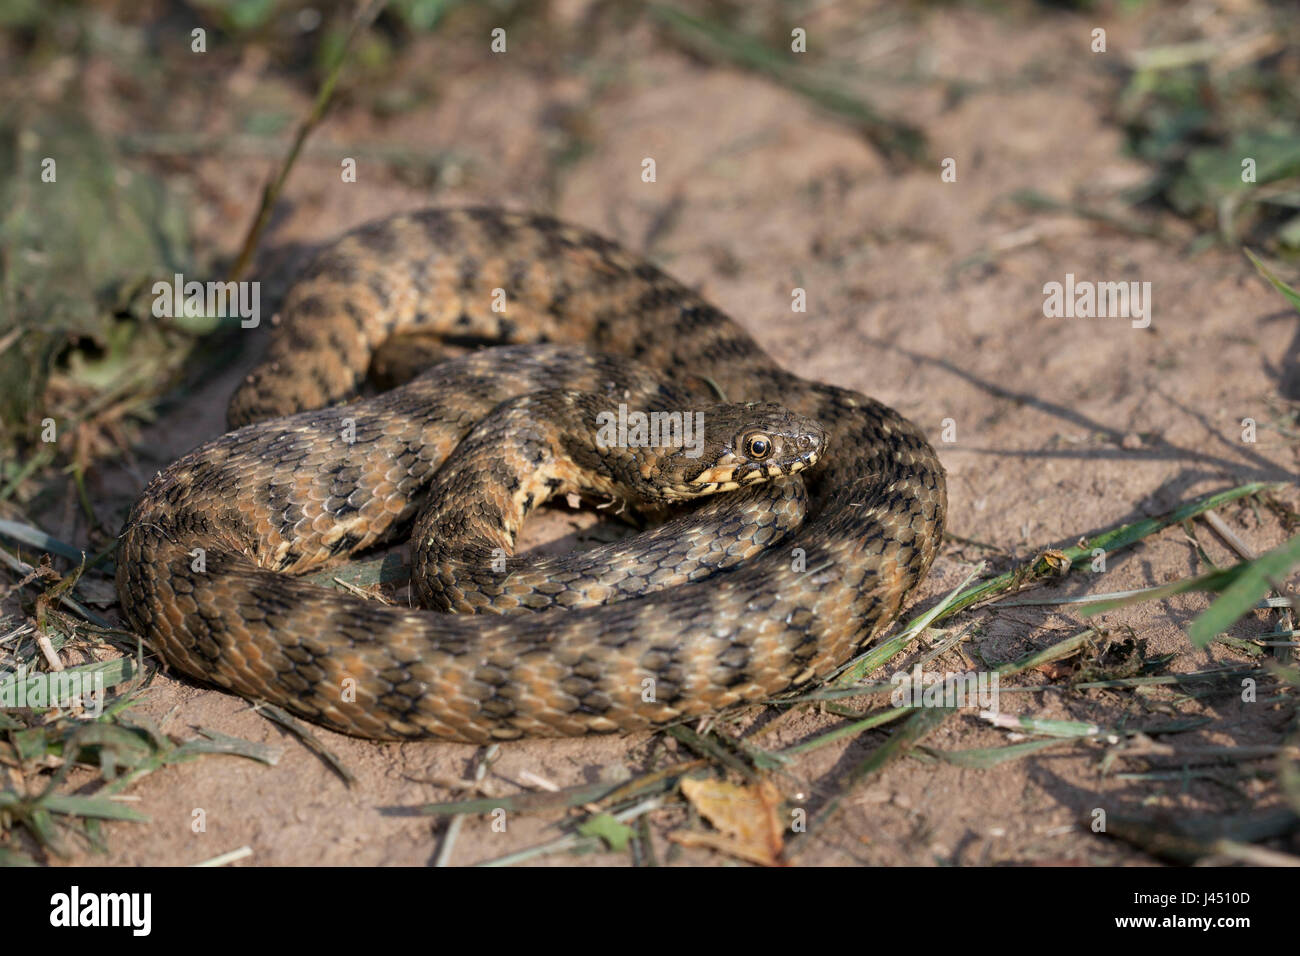 basking adult viperine snake Stock Photo